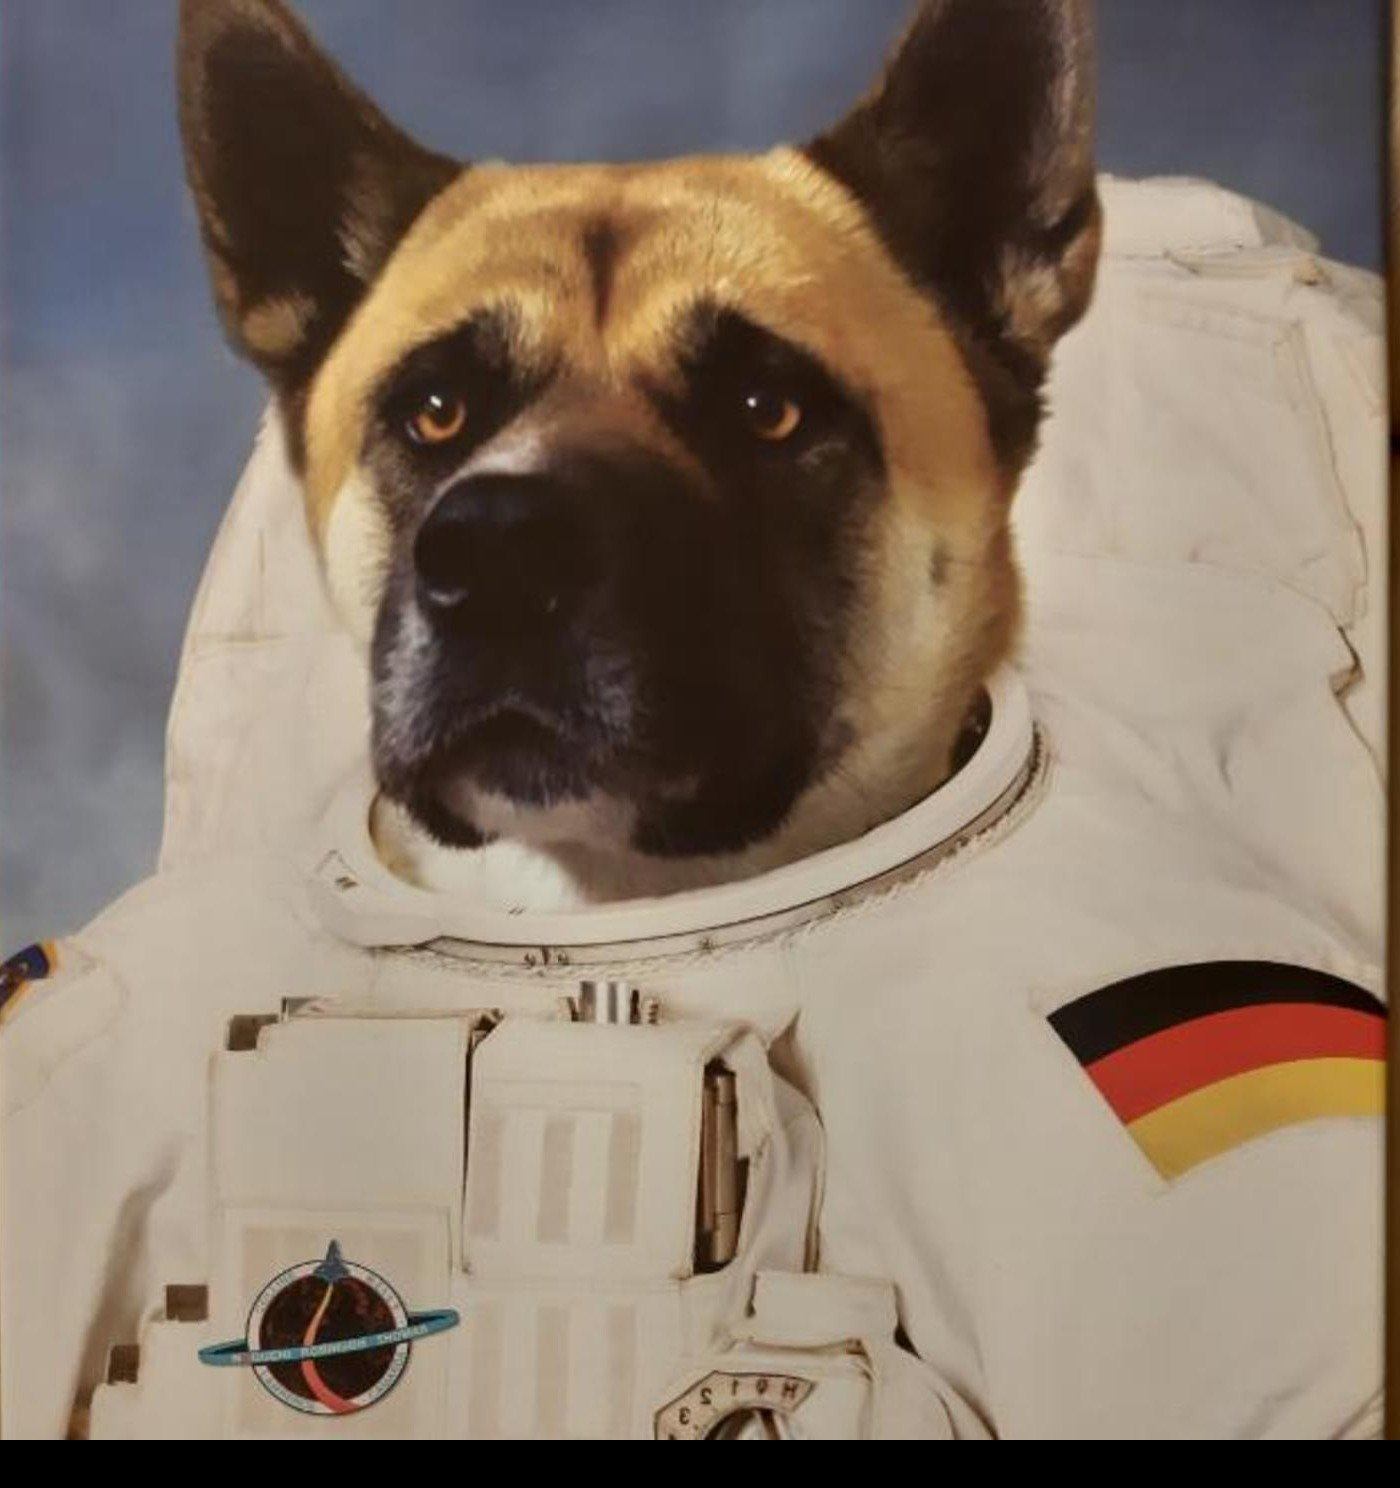 Der Astronaut - Poster auf 250g Qualitätsdruck